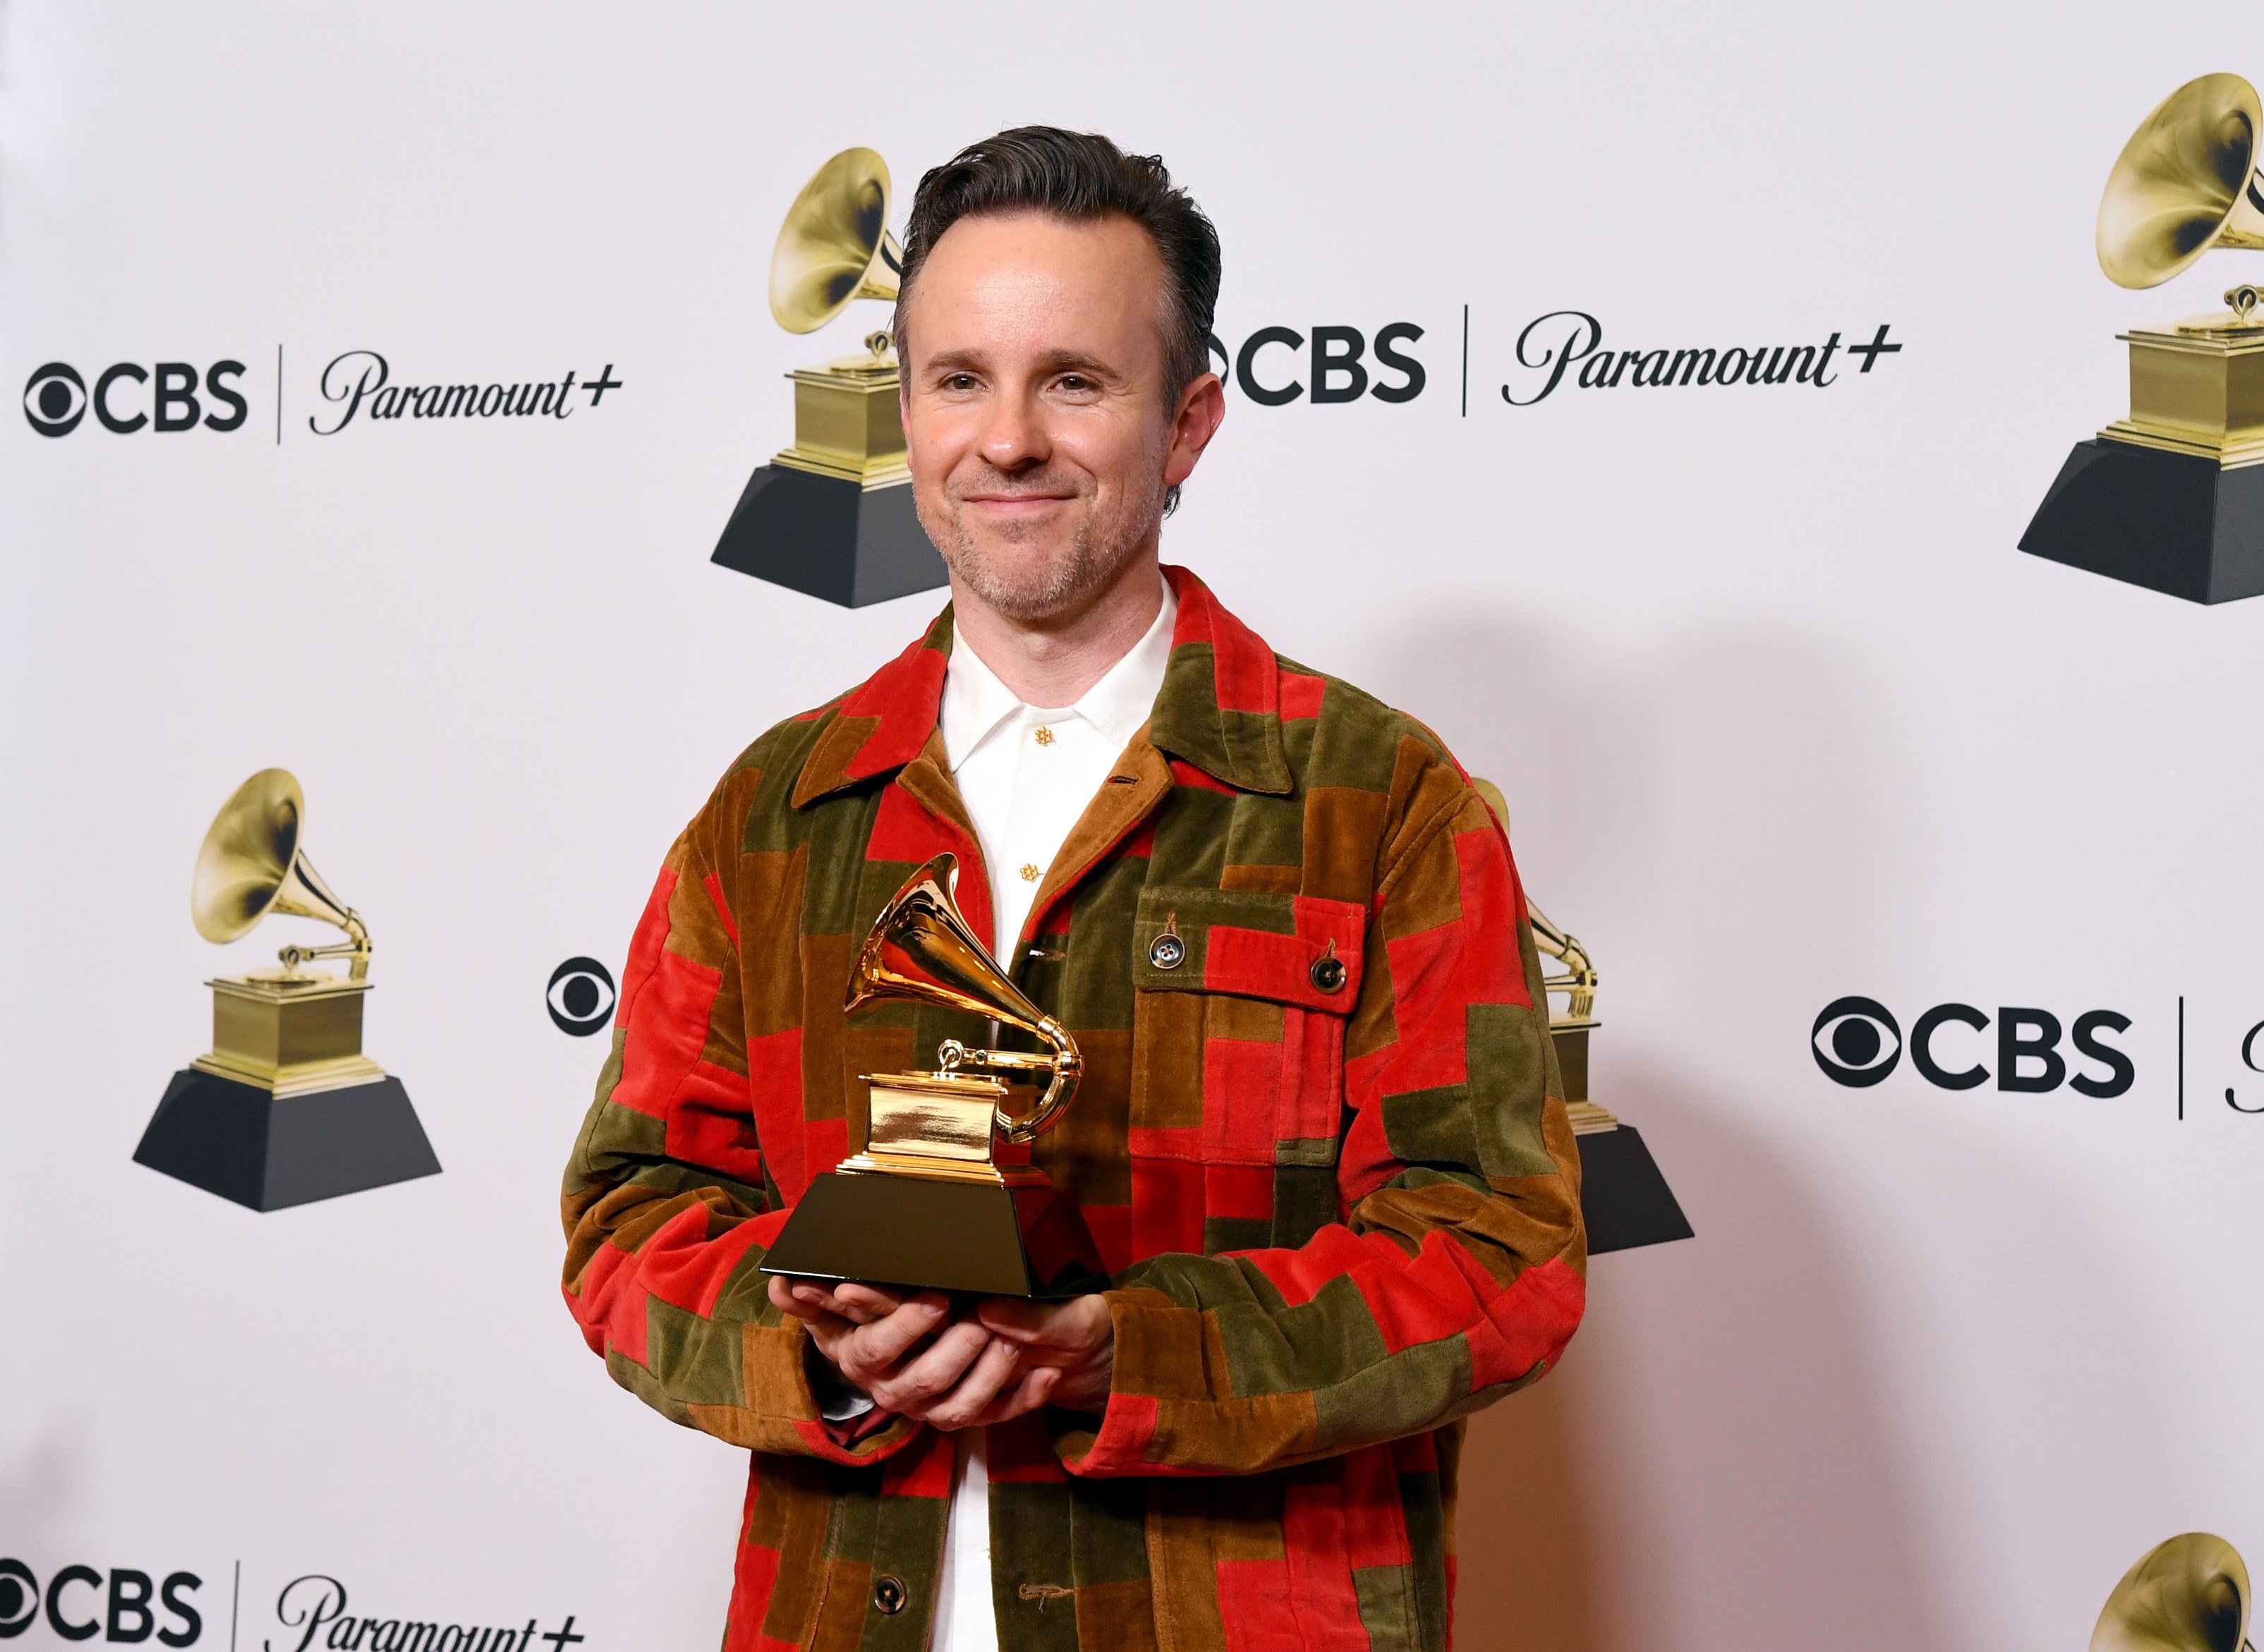 Ricky Reed holds up a Grammy Award